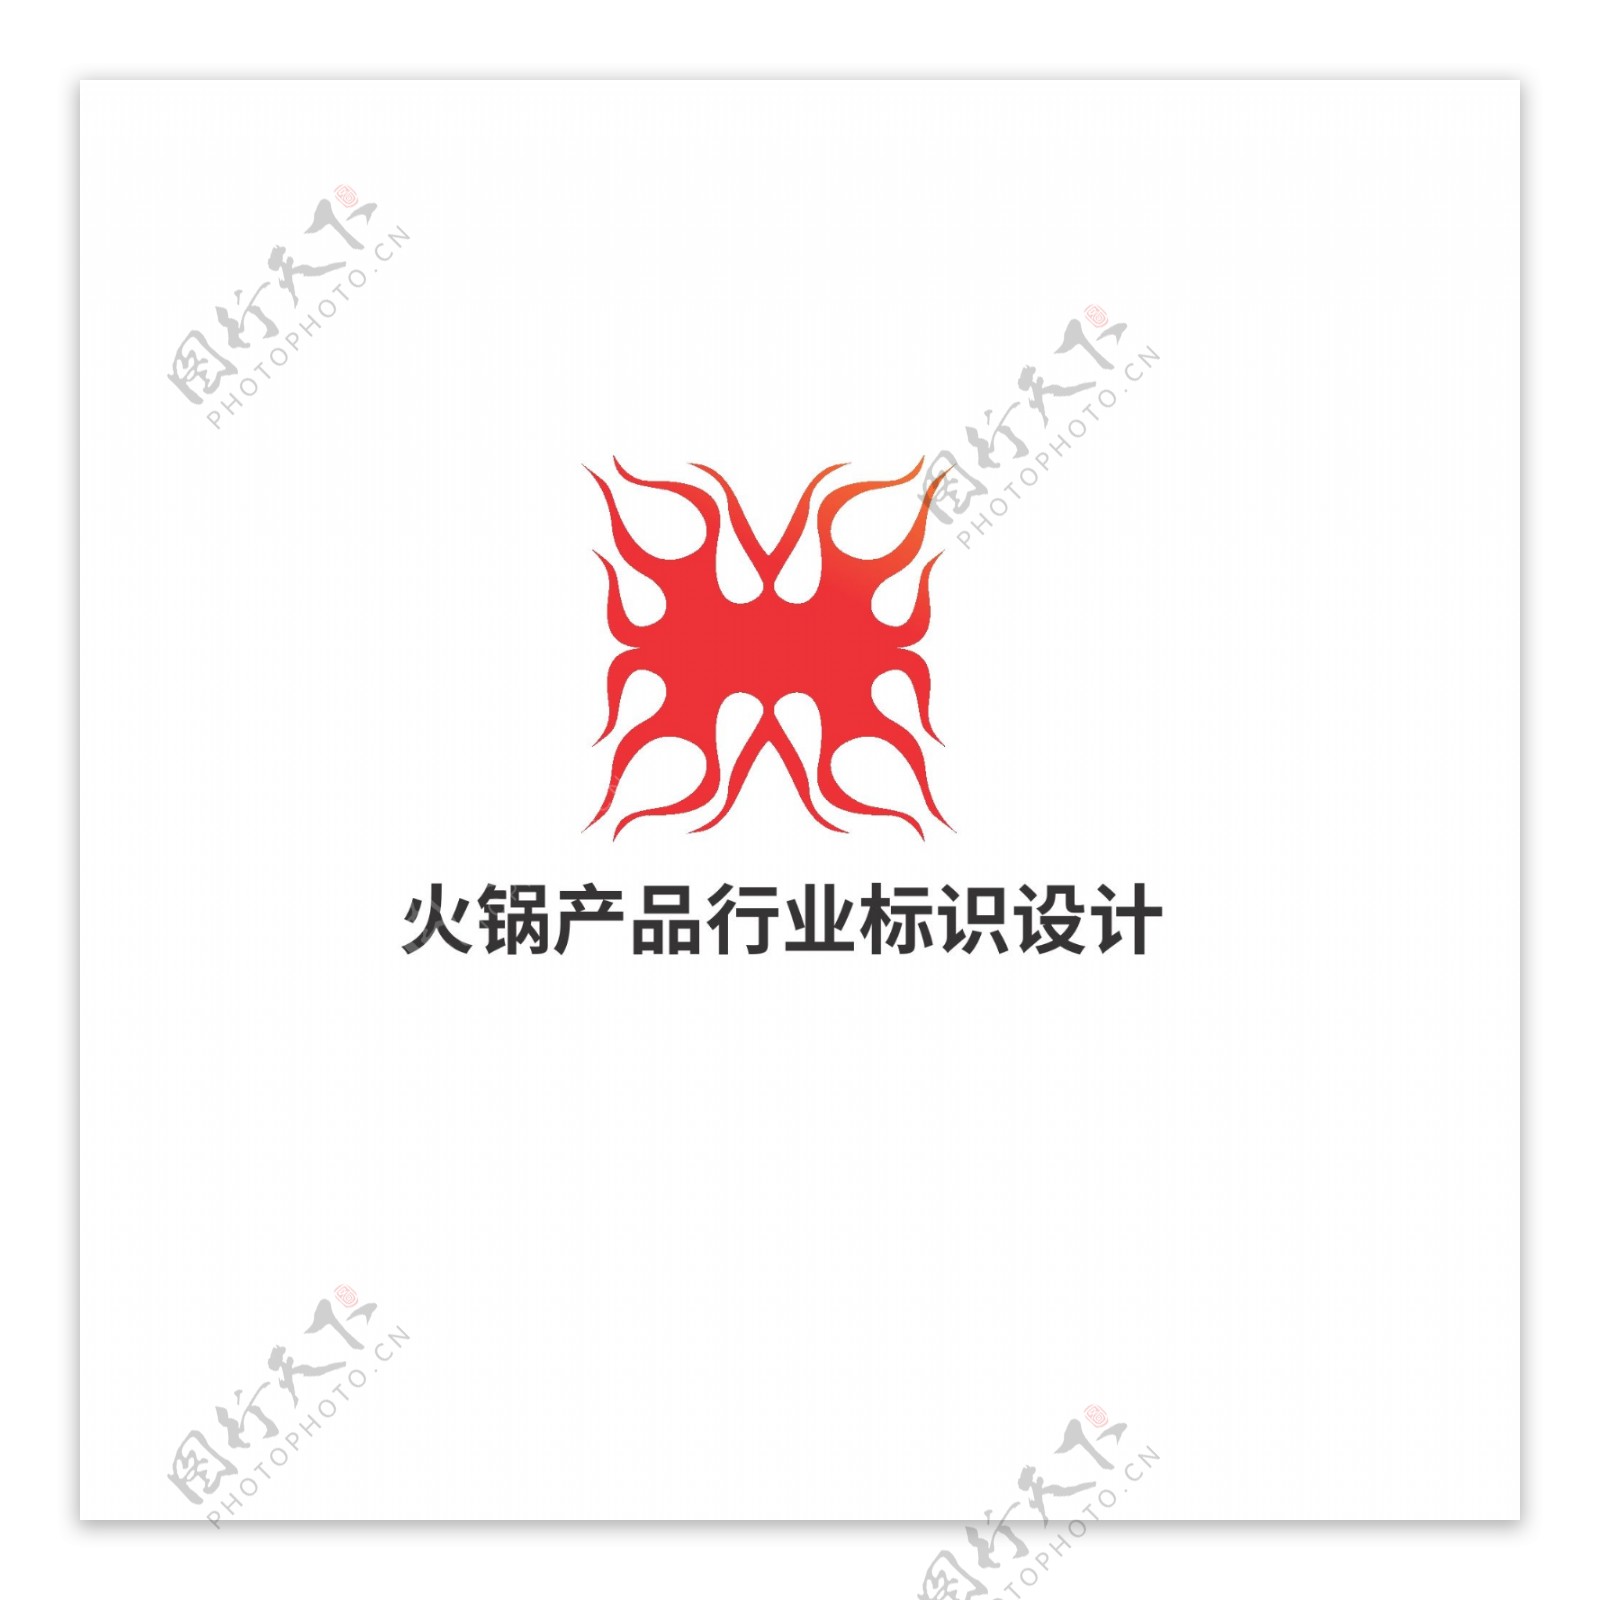 火锅产品行业标识设计